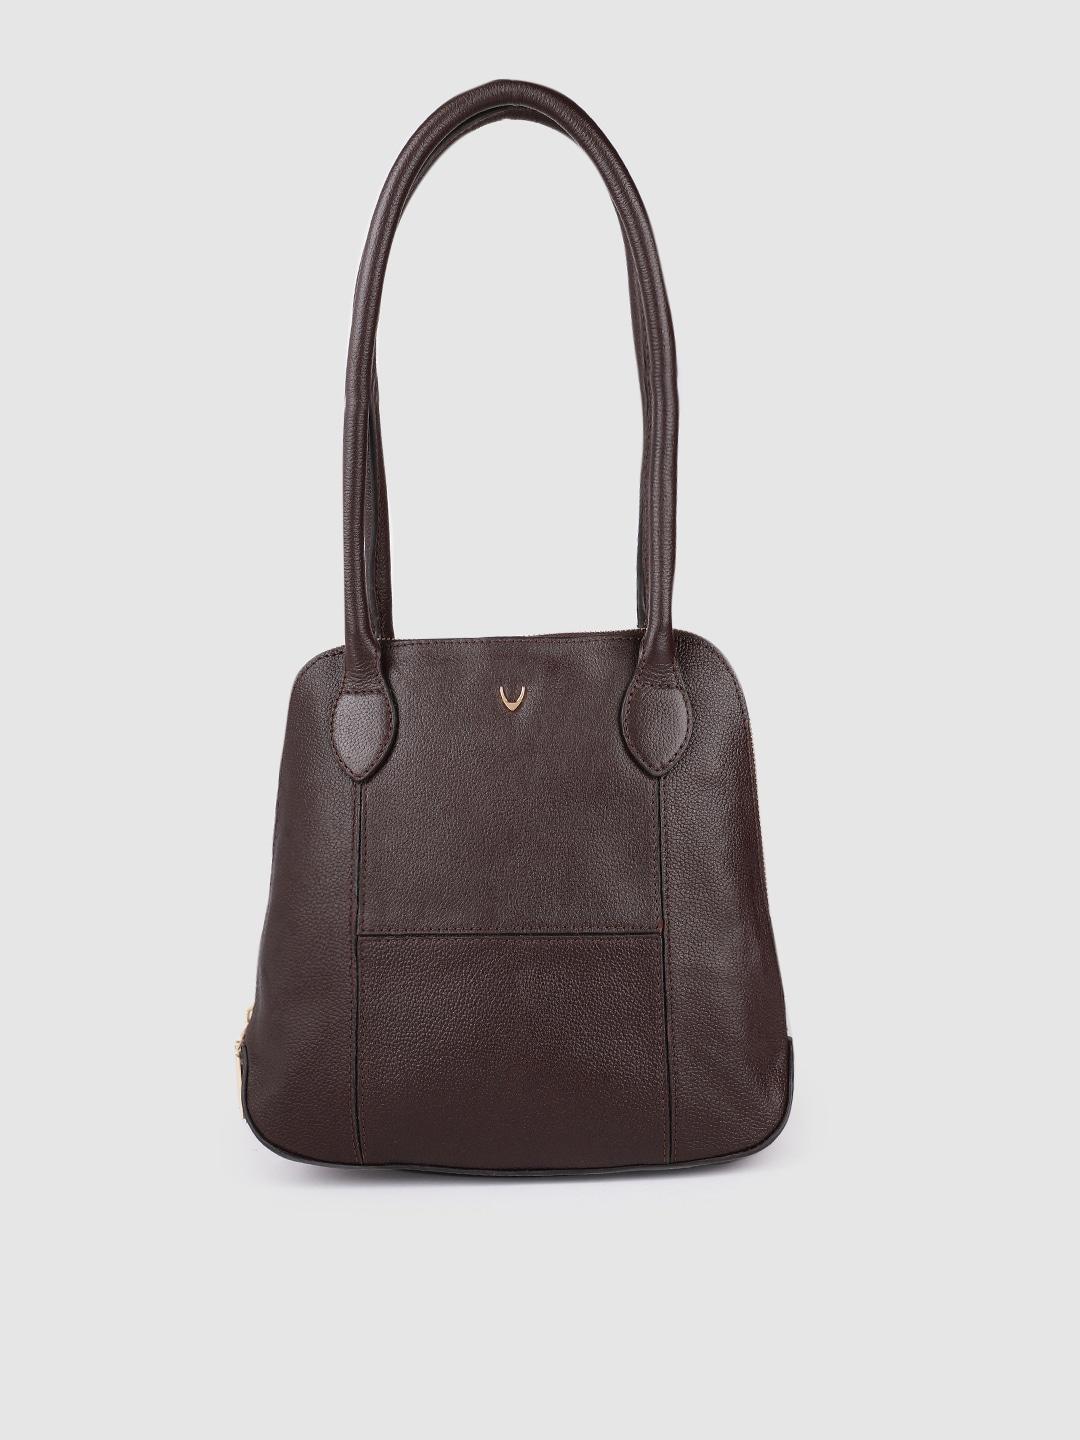 Hidesign Brown Leather Solid Shoulder Bag